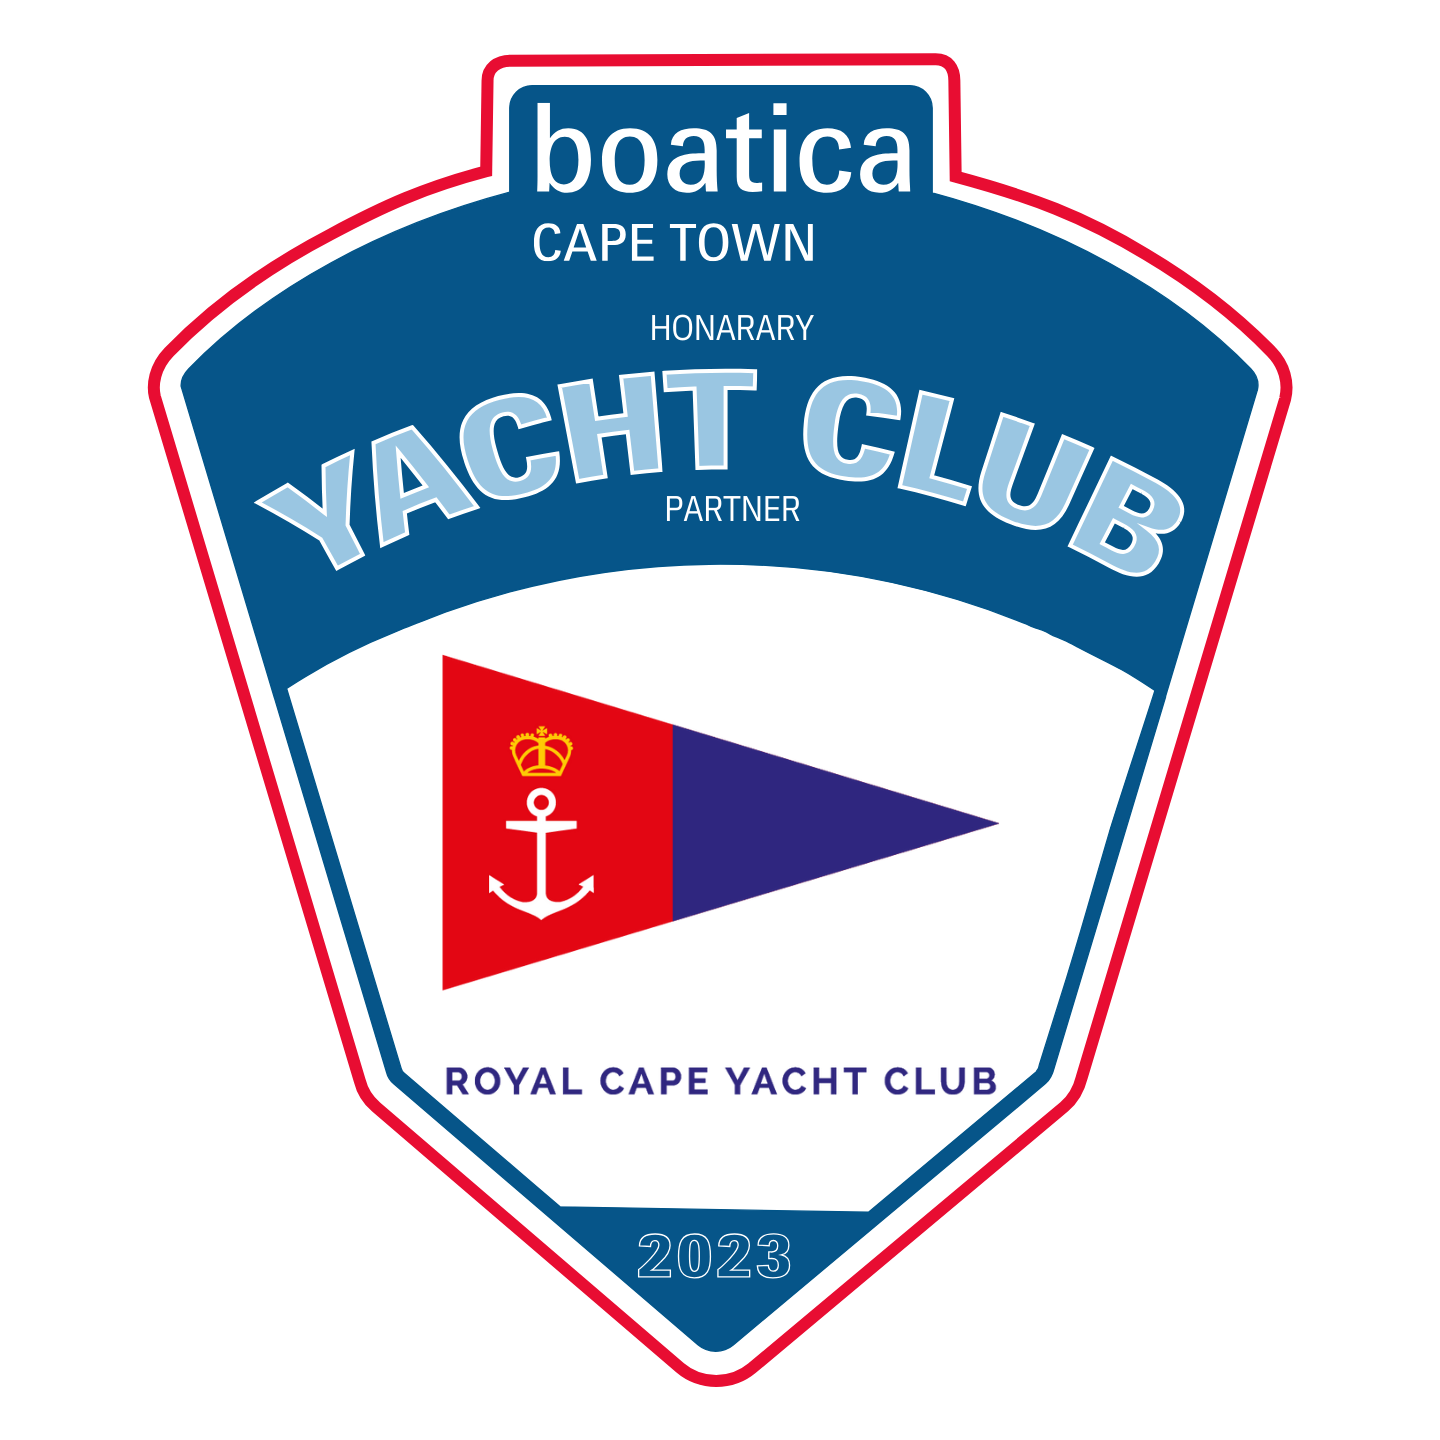 Zeekoei Vlei boatica honorary yacht club partner logo.pdf - 3